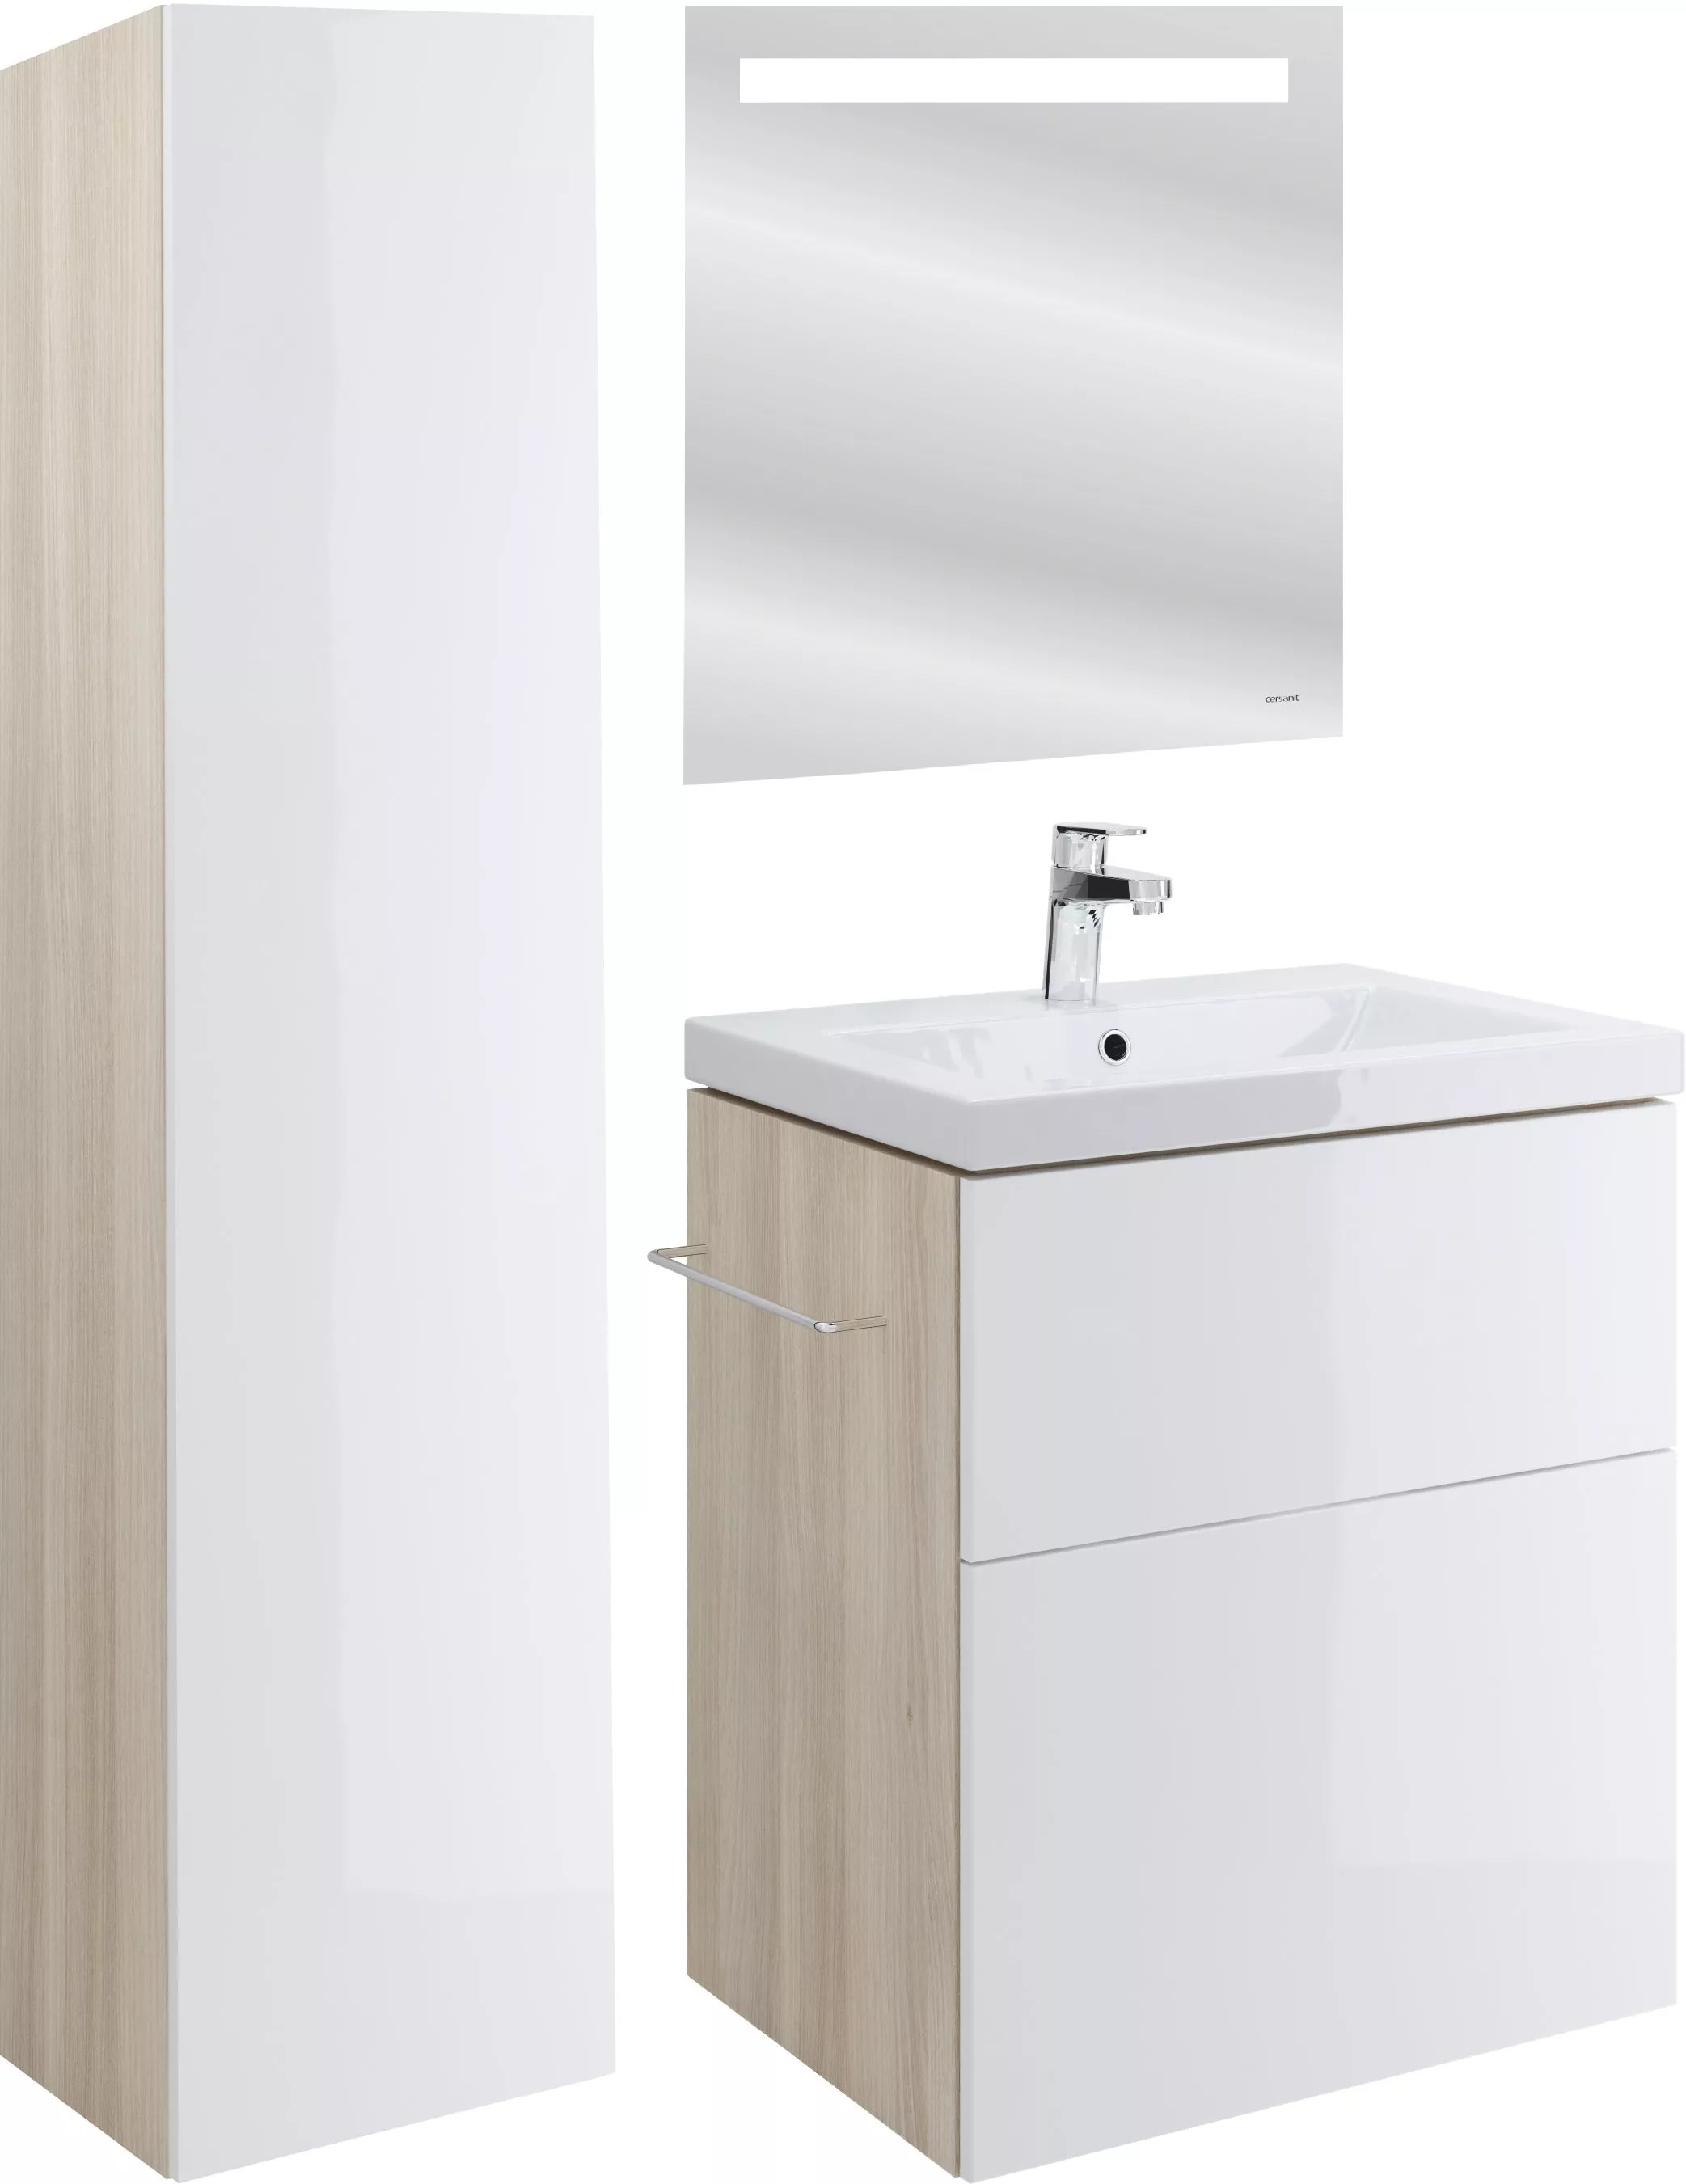 Мебель для ванной Cersanit Smart 60 ясень, белый, подвесная, цвет светлое дерево - фото 1